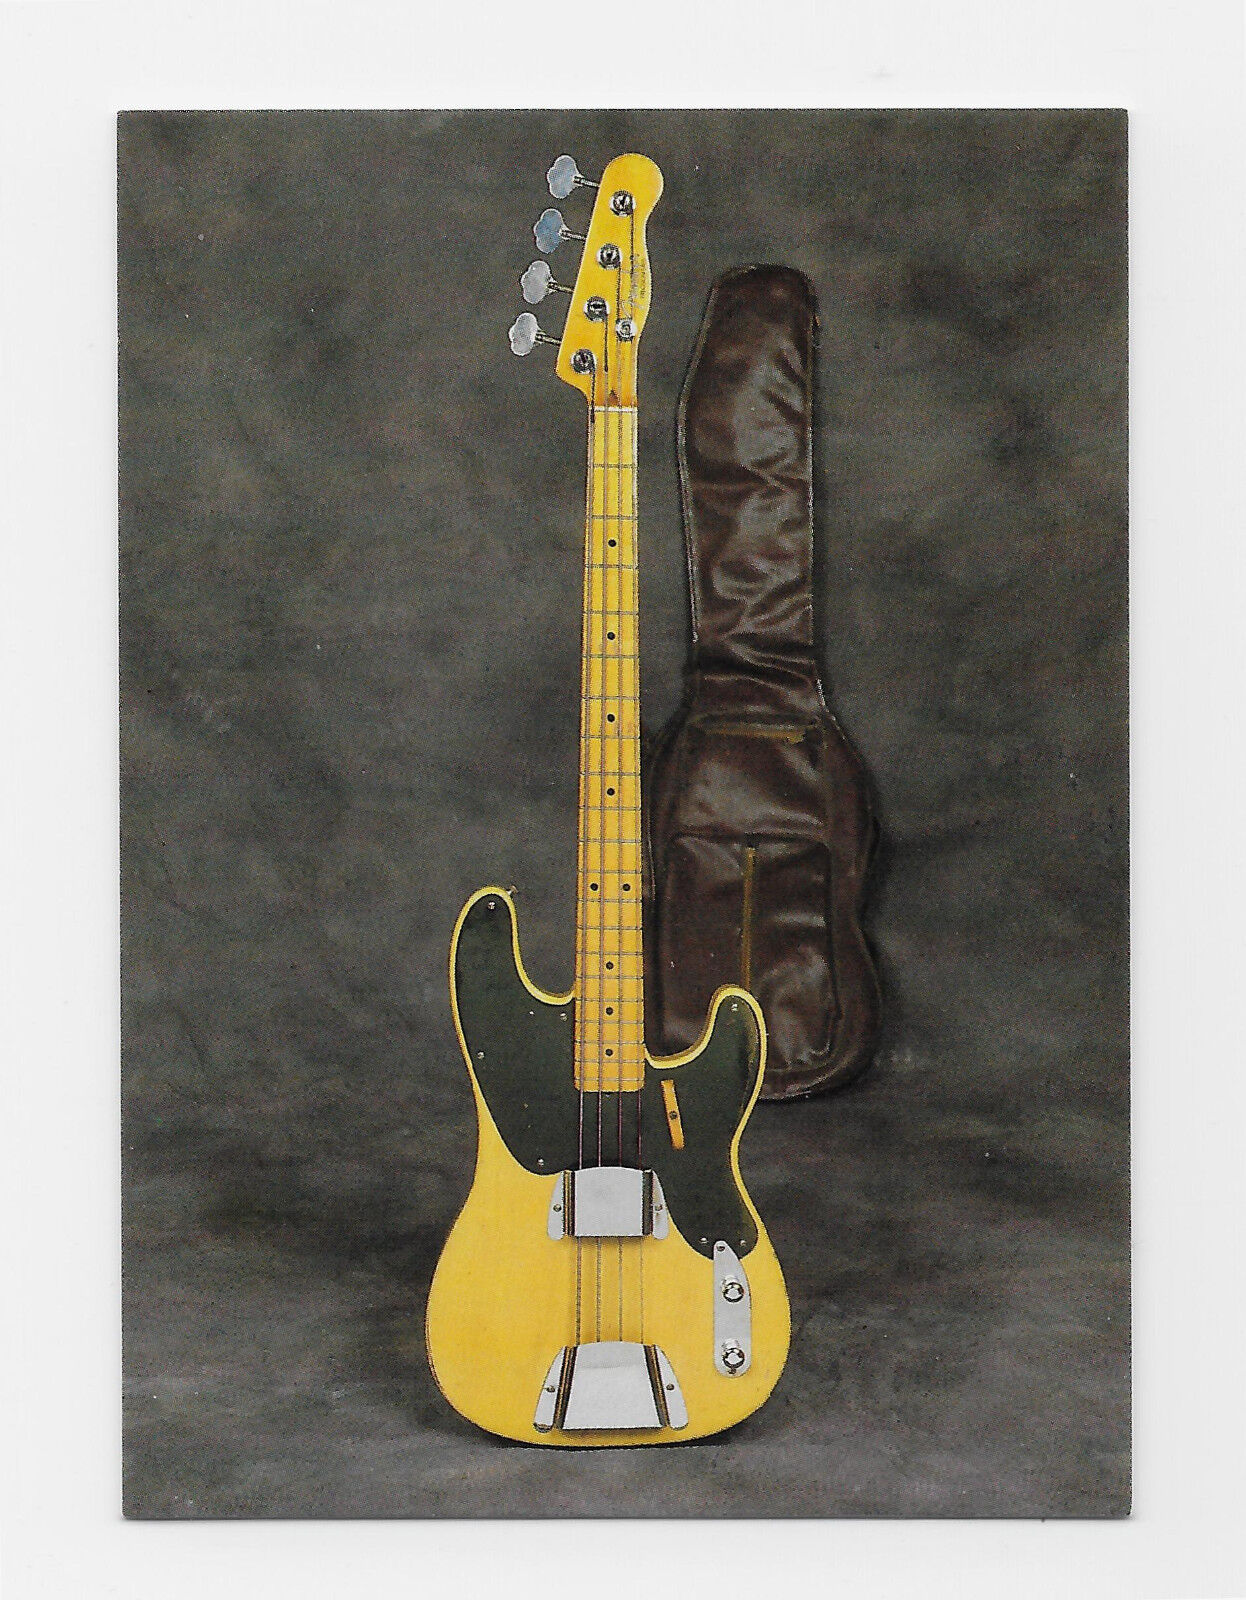 card - 1951 Fender Precision Bass  - guitar card series 1 #6